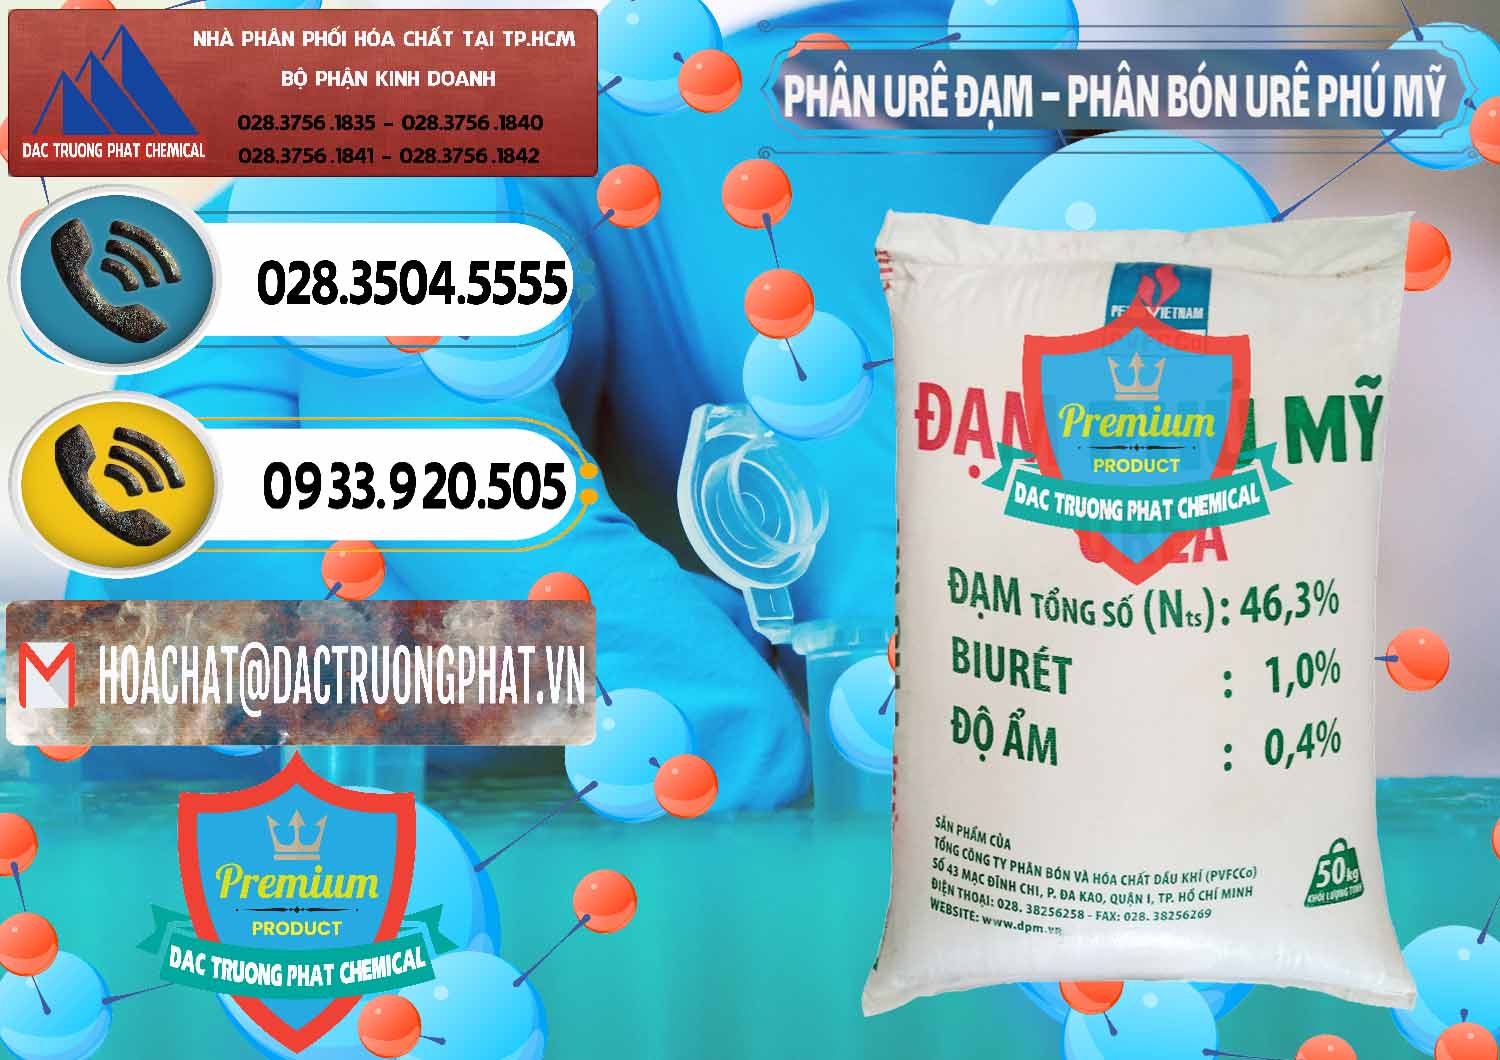 Công ty bán và cung cấp Phân Urê Đạm – Phân Bón Urê Phú Mỹ Việt Nam - 0193 - Cty cung ứng & phân phối hóa chất tại TP.HCM - hoachatdetnhuom.vn